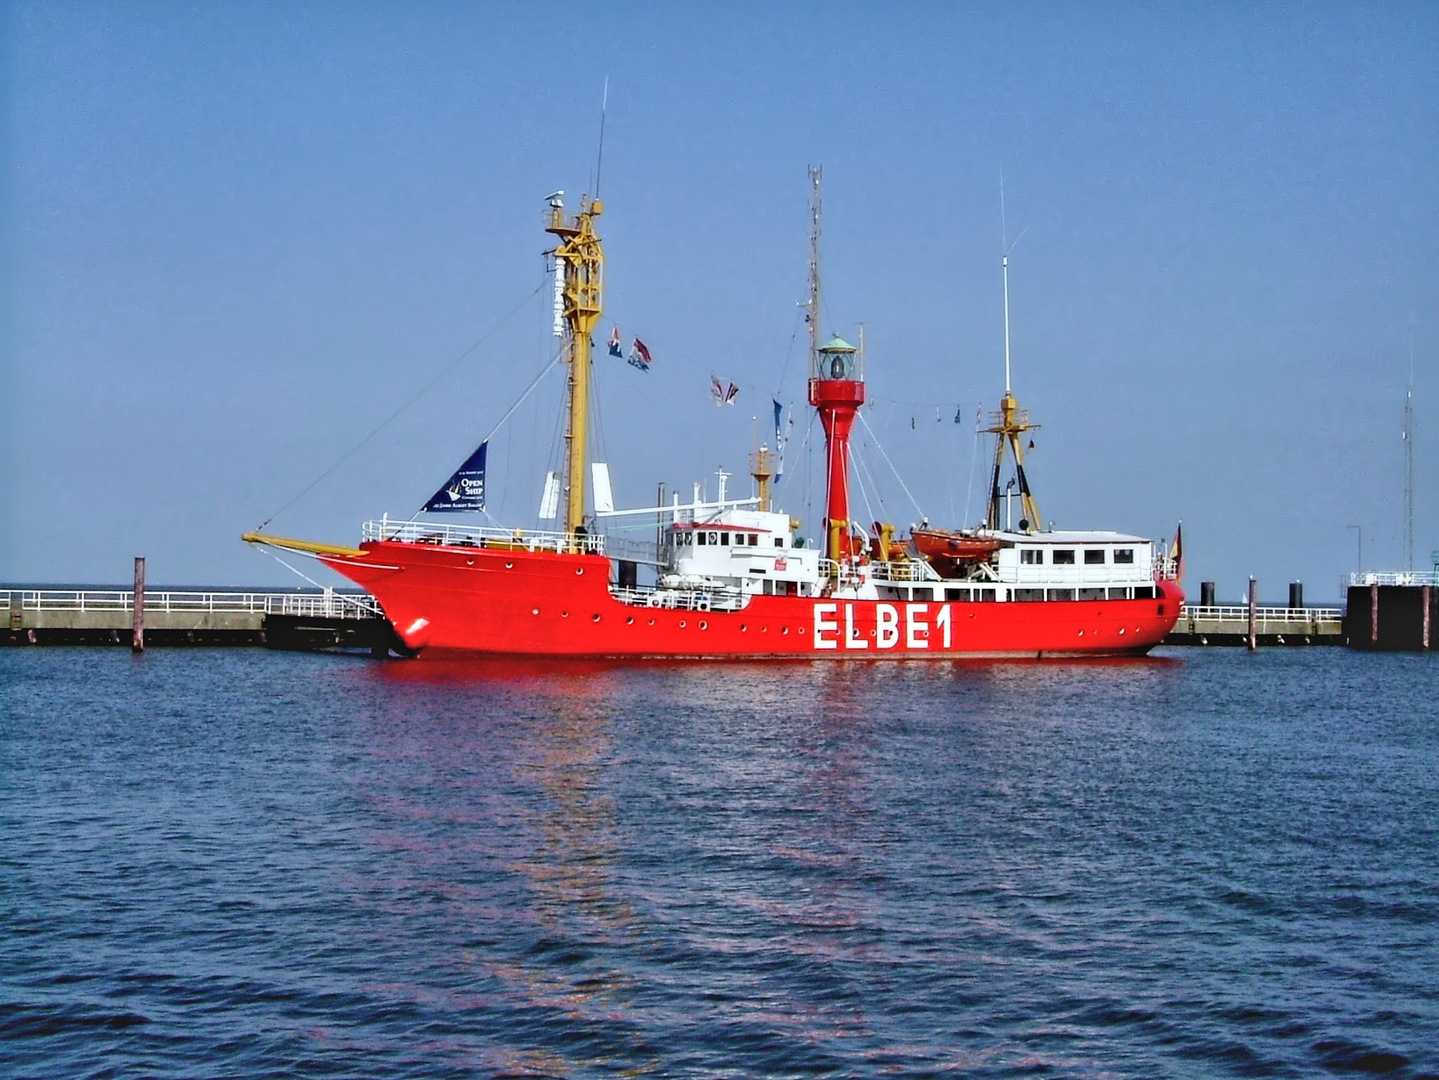 Feuerschiff Elbe 1